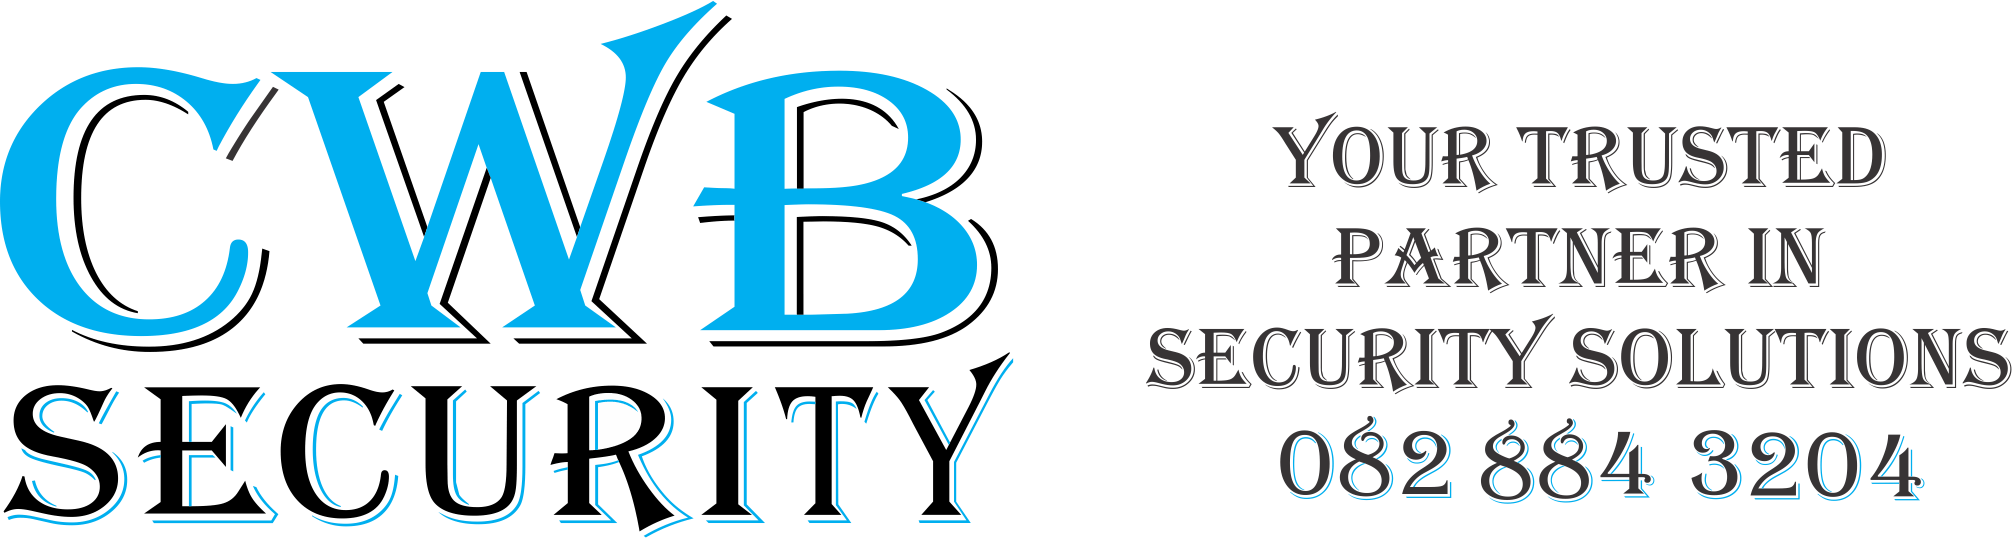 CWB Logo - CWB Security